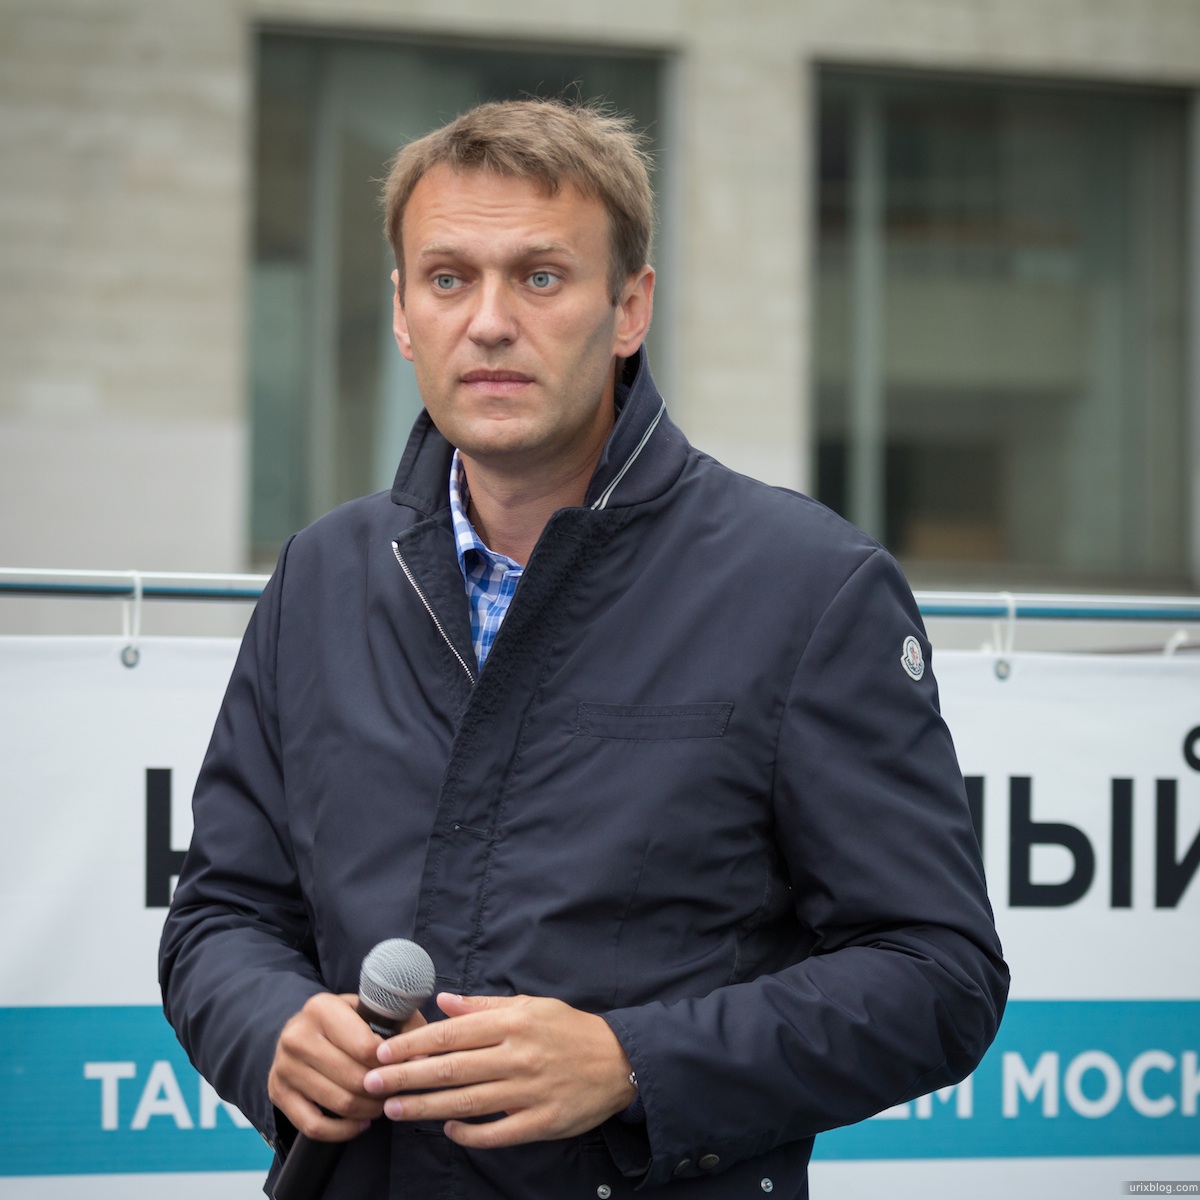 2013, Москва, Россия, Преображенская площадь, Алексей Навальный, митинг, встреча, мэр